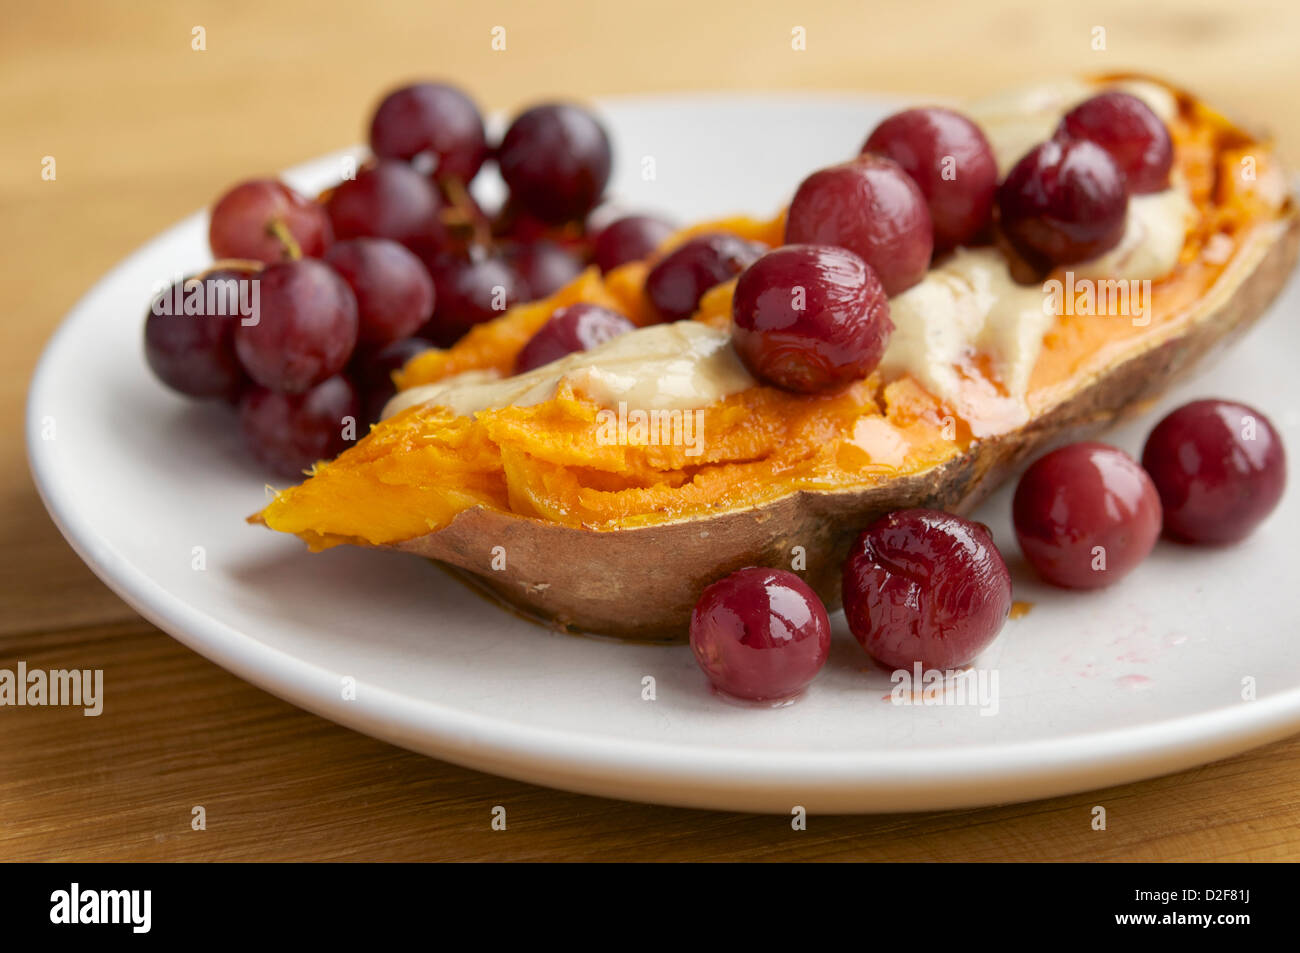 La plaque avec des patates douces rôties rempli de raisins avec une sauce au fromage vegan et sirop d'érable Banque D'Images